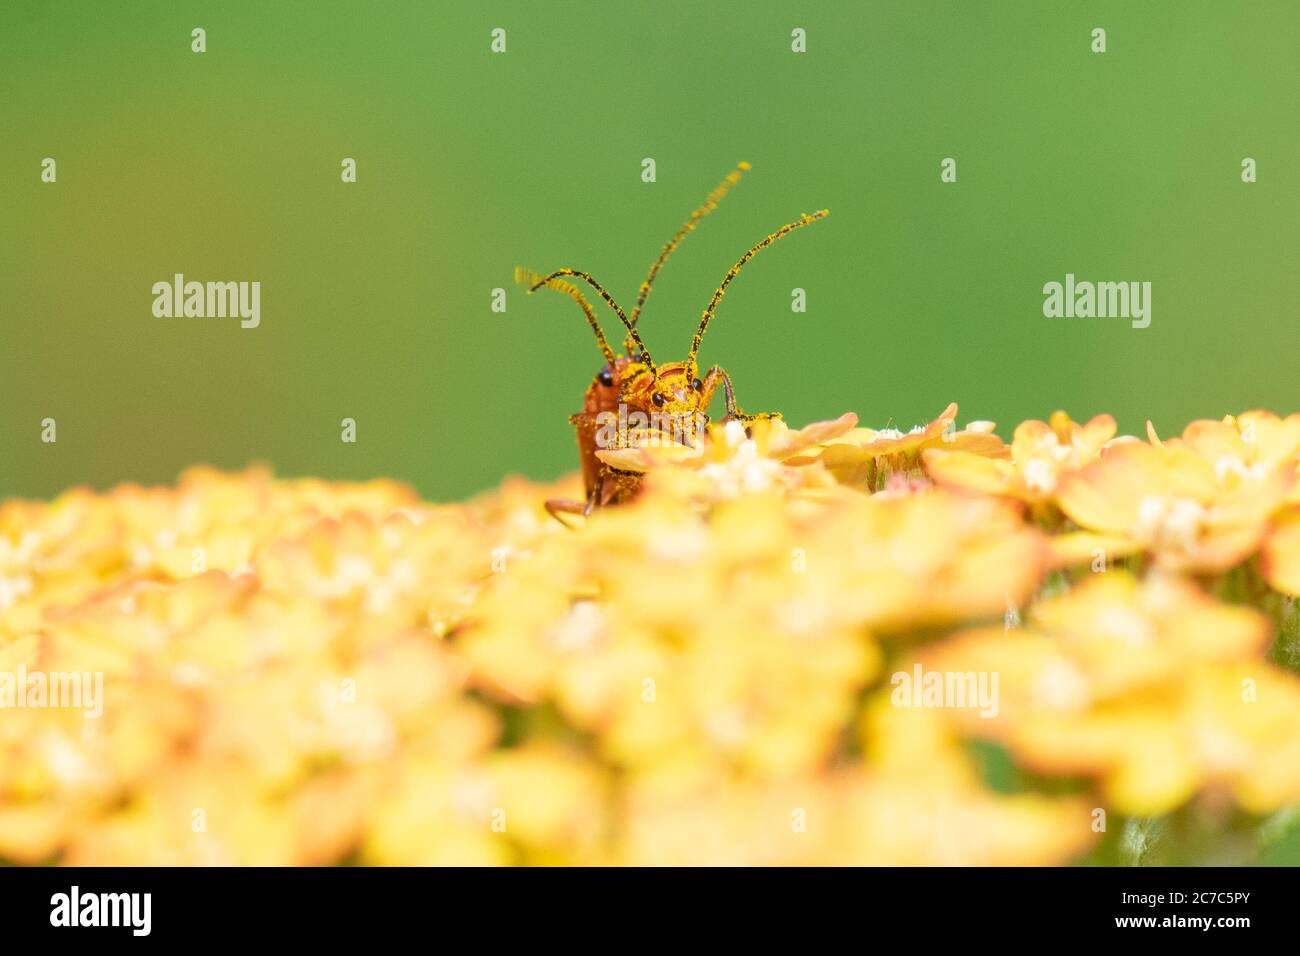 Rhagonycha fulva - coléoptères des soldats rouges - recouverts de grains de pollen se confond sur les fleurs de terre cuite d'Achillea dans le jardin britannique Banque D'Images